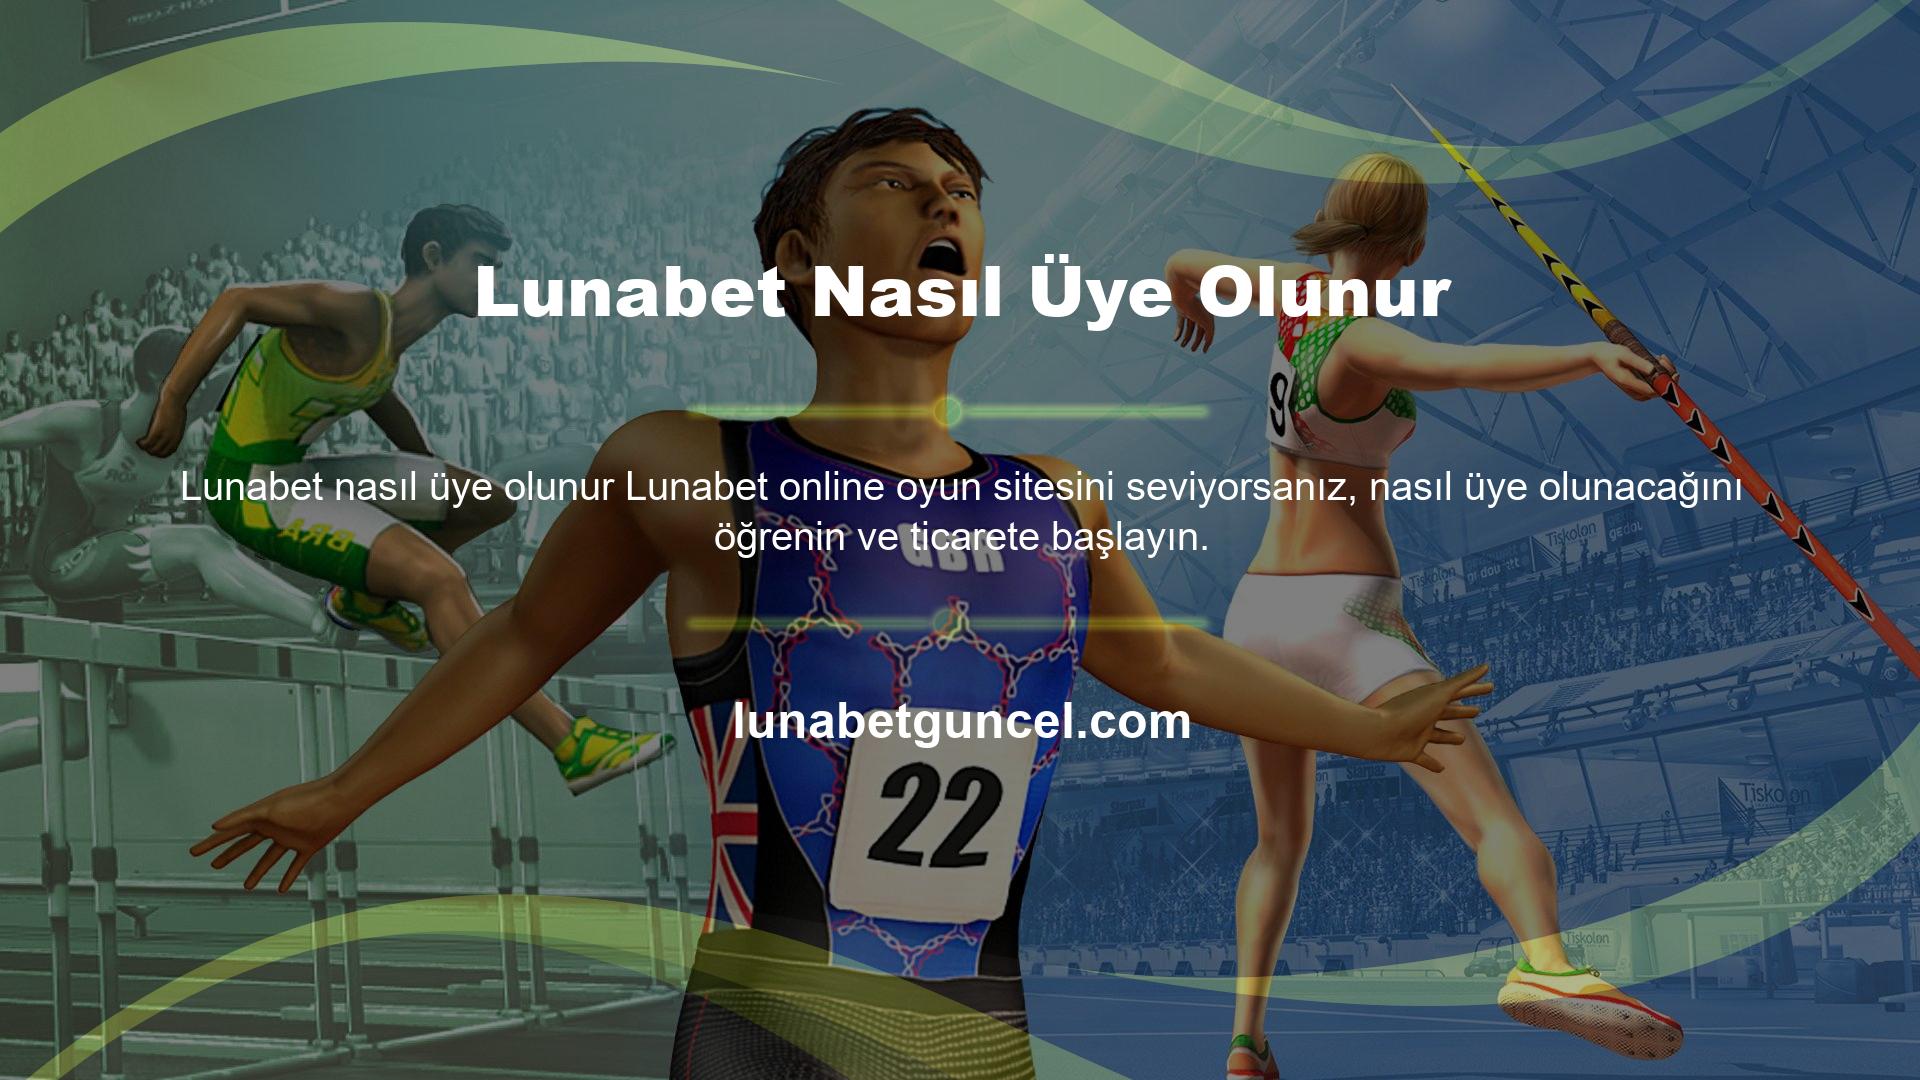 Lunabet casino sitesi Türkçe olarak mevcuttur ve 18 yaş ve üstü kişilerin üyelik başvurularını kabul etmektedir